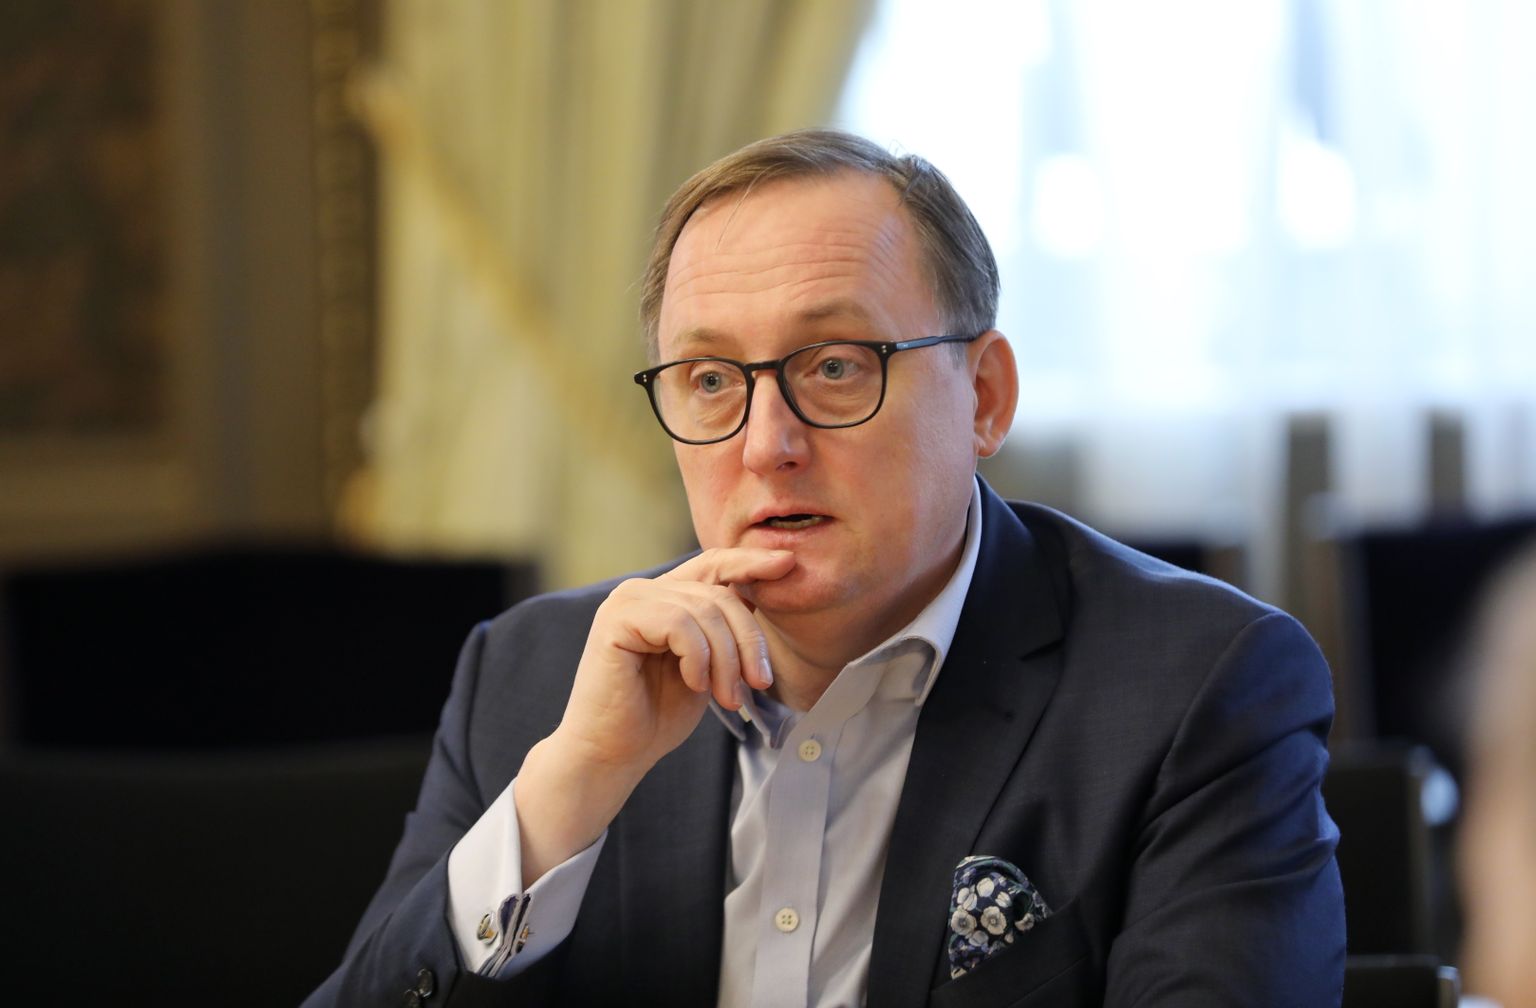 Latvijas Bankas prezidents Mārtiņš Kazāks intervijā Ikgadējās karjeras izglītības akcijas "Ēnu diena" laikā.